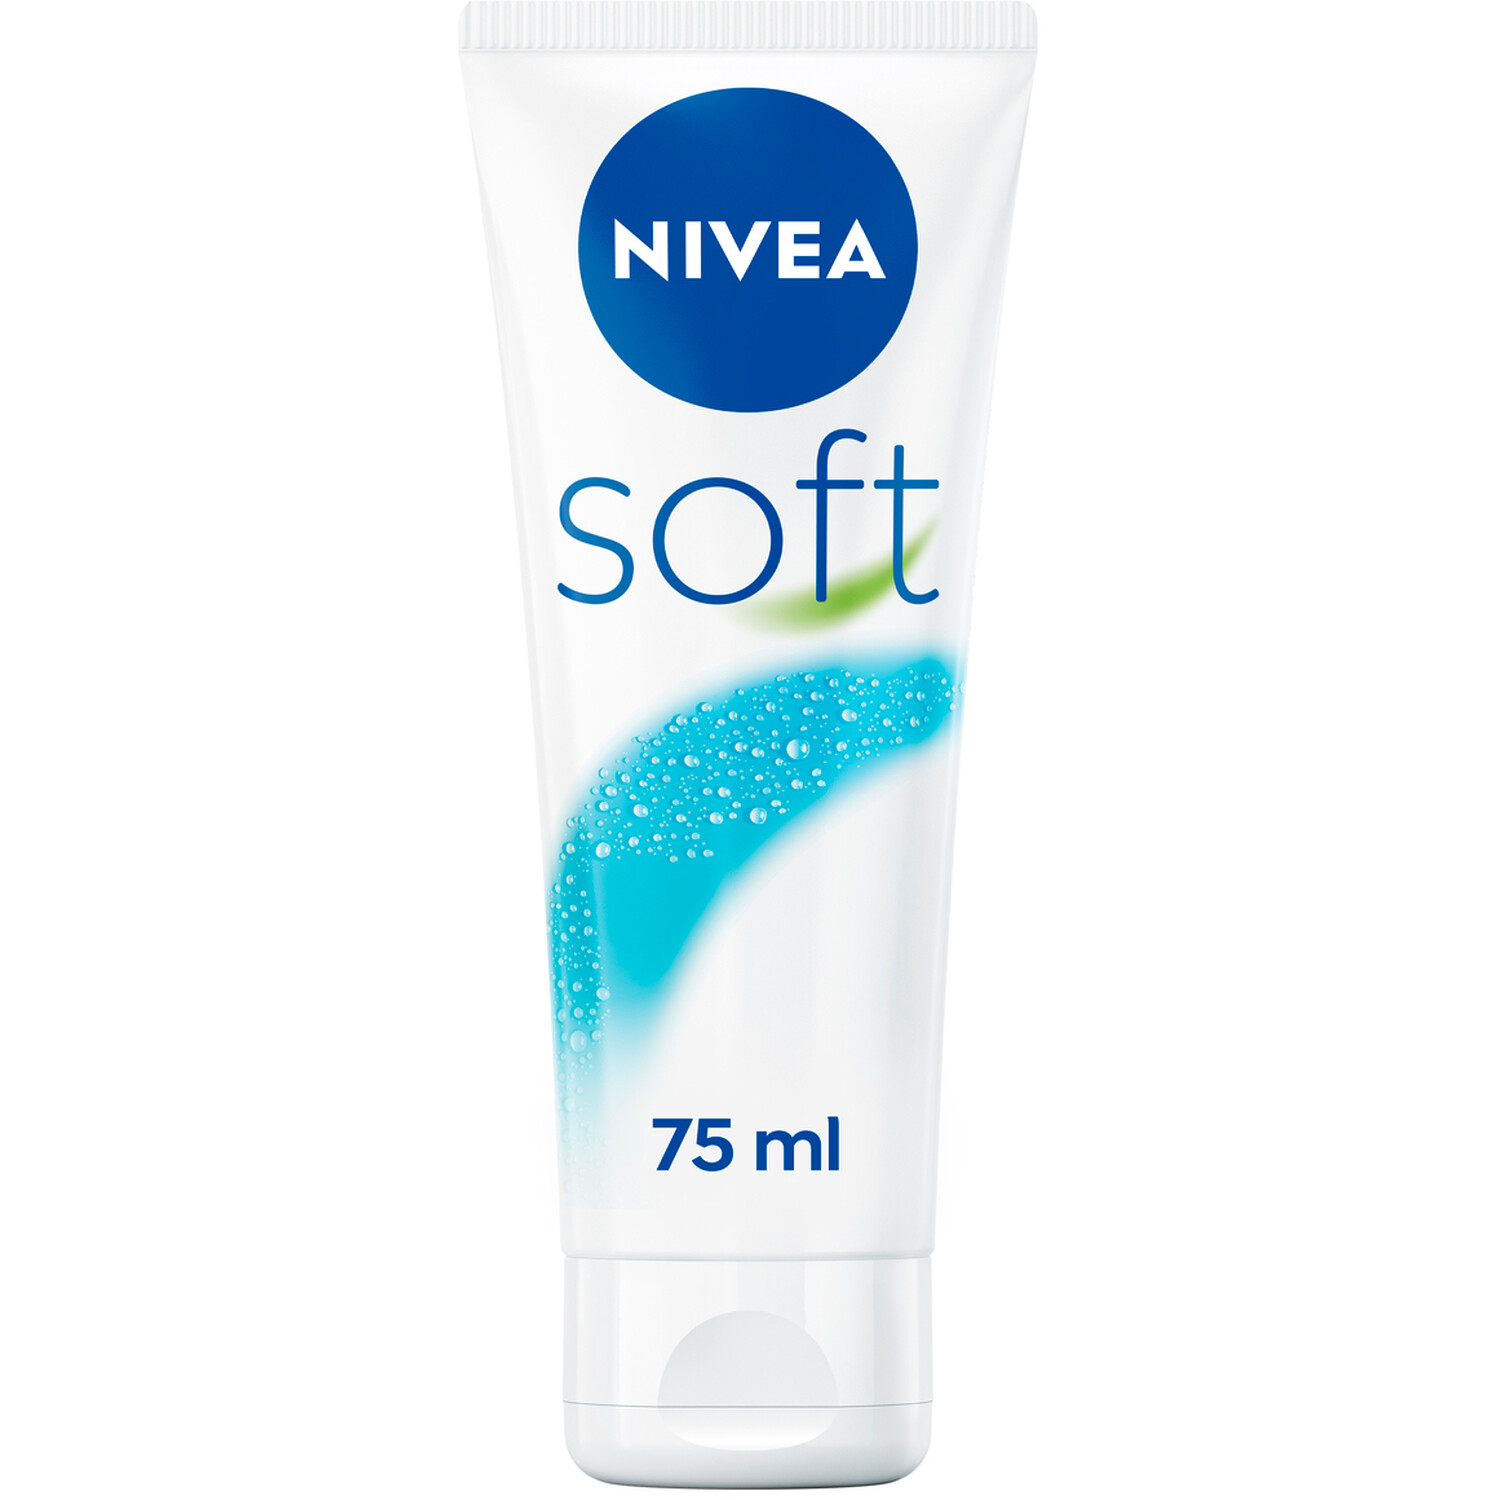 Nivea Soft Cream 75ml - White Image